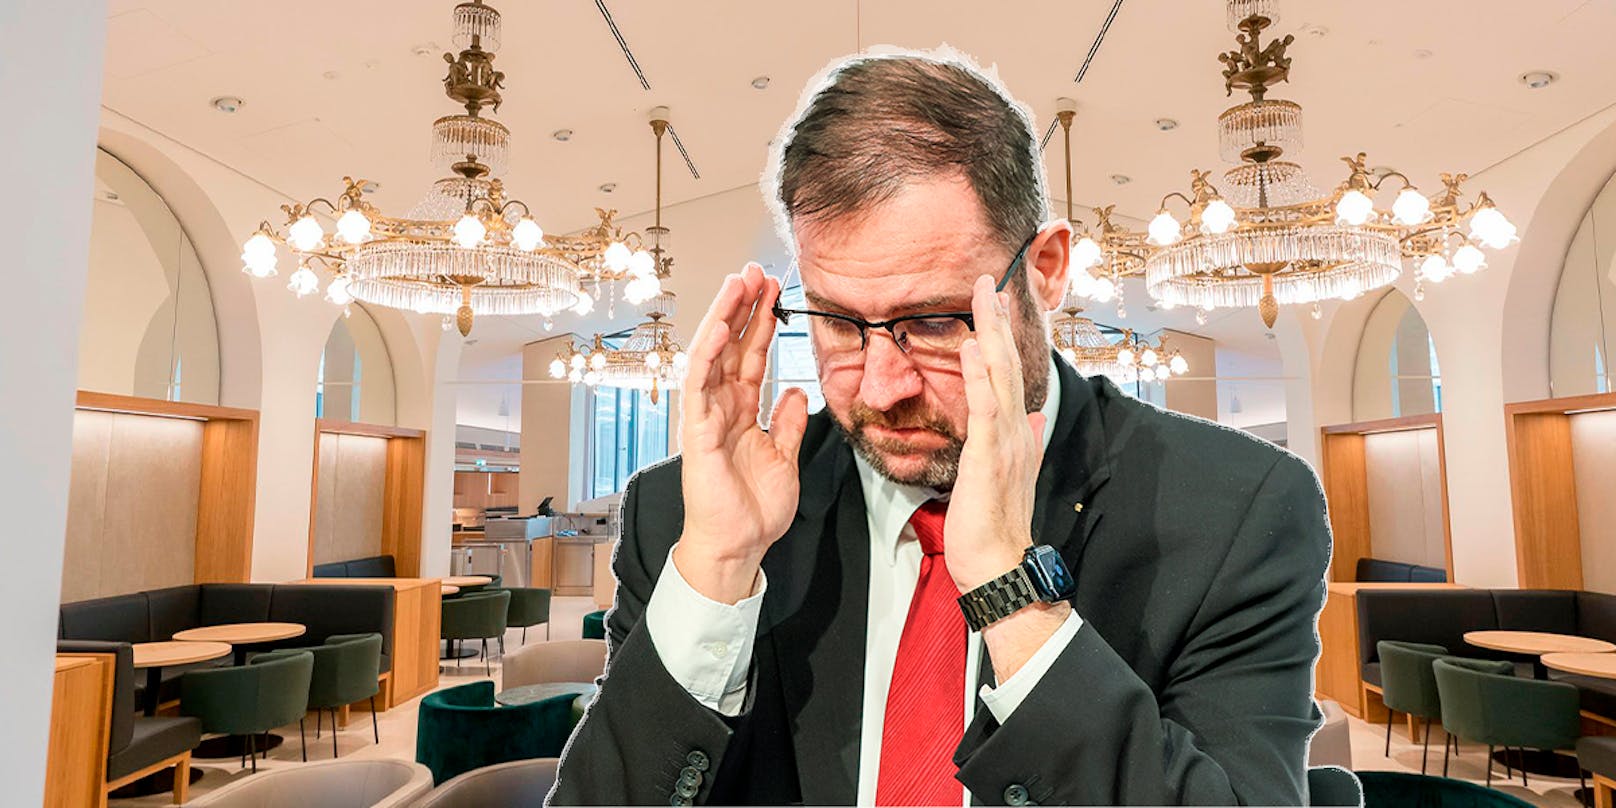 "Kein Dining" – FPÖ macht Restaurant-Pleite zum Politikum